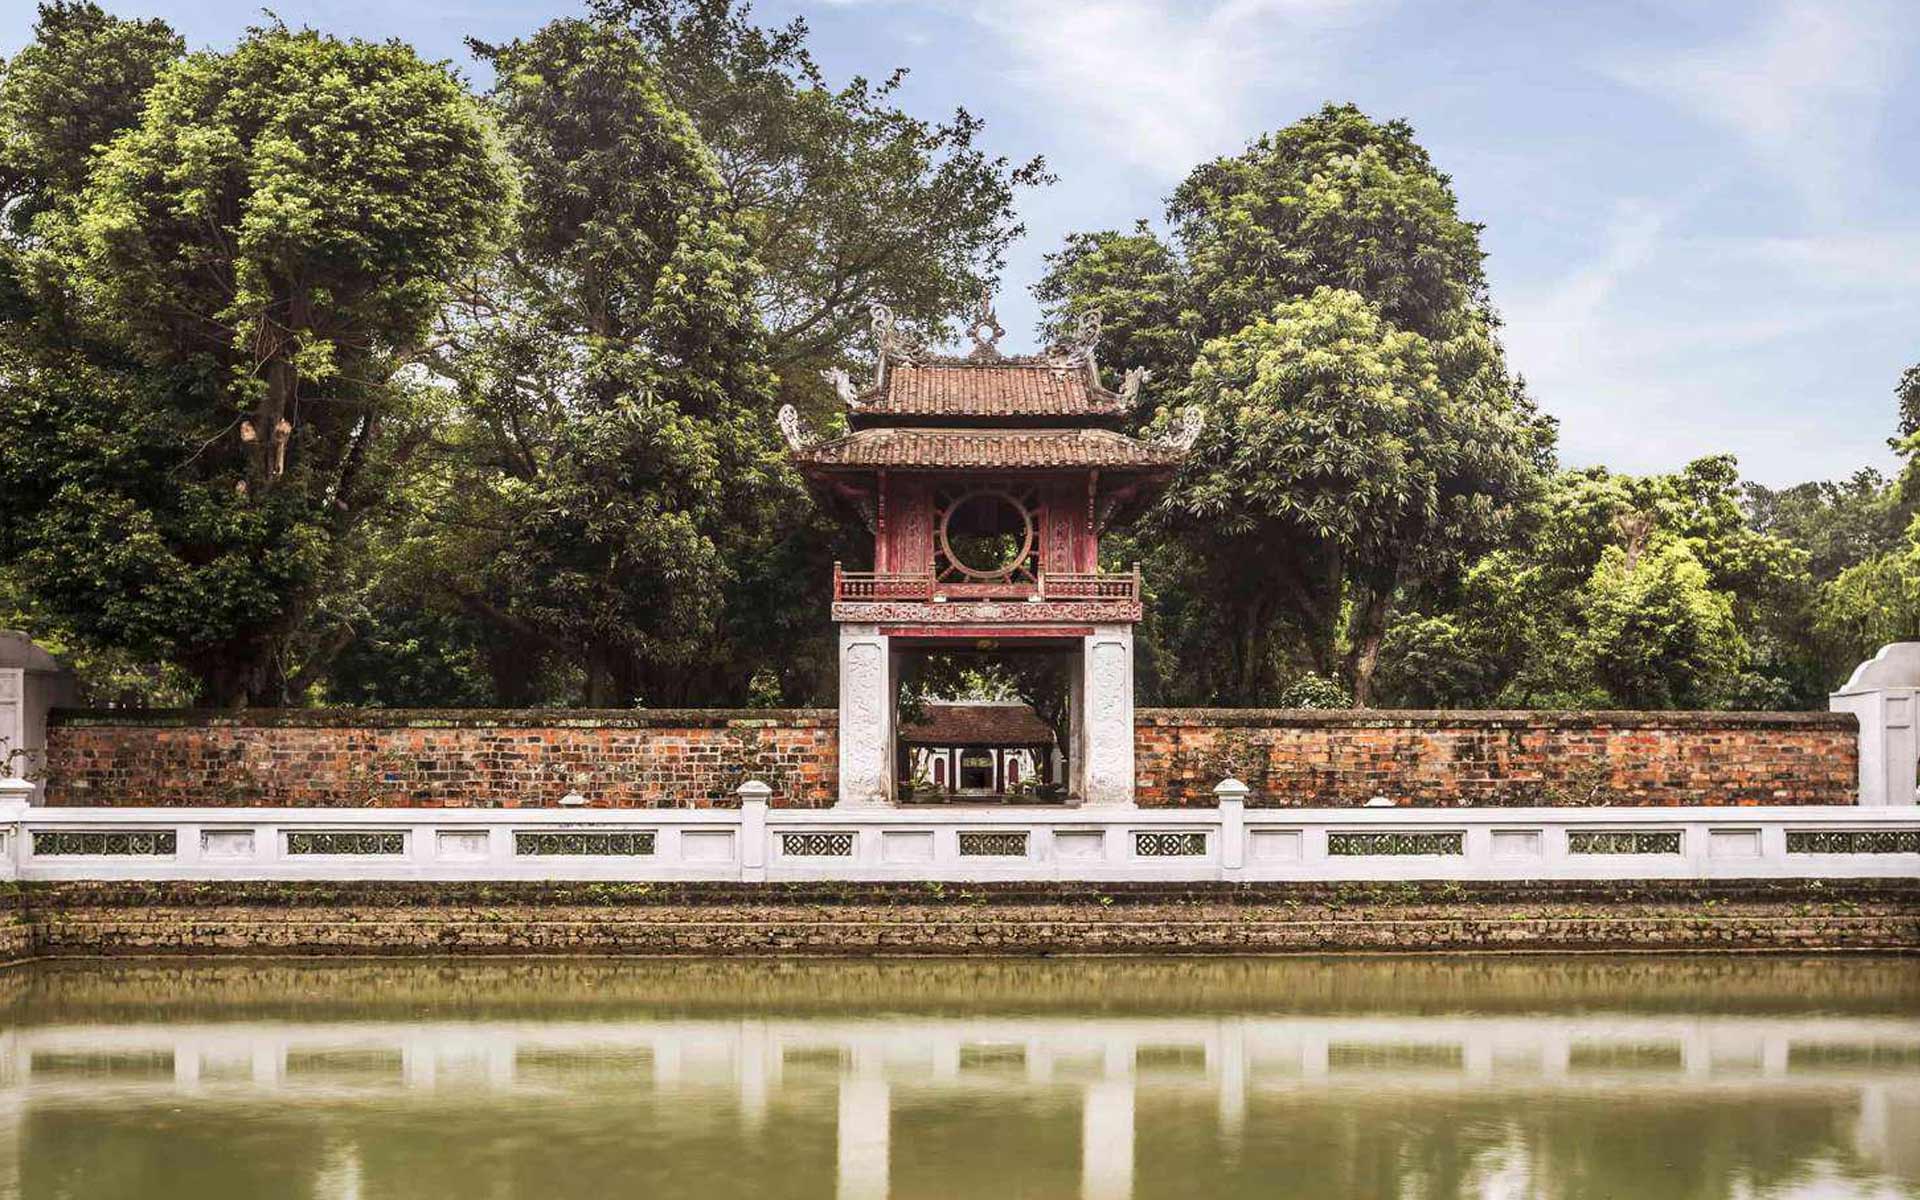 Đến với các điểm tham quan lịch sử tại Hà Nội có view cực đẹp